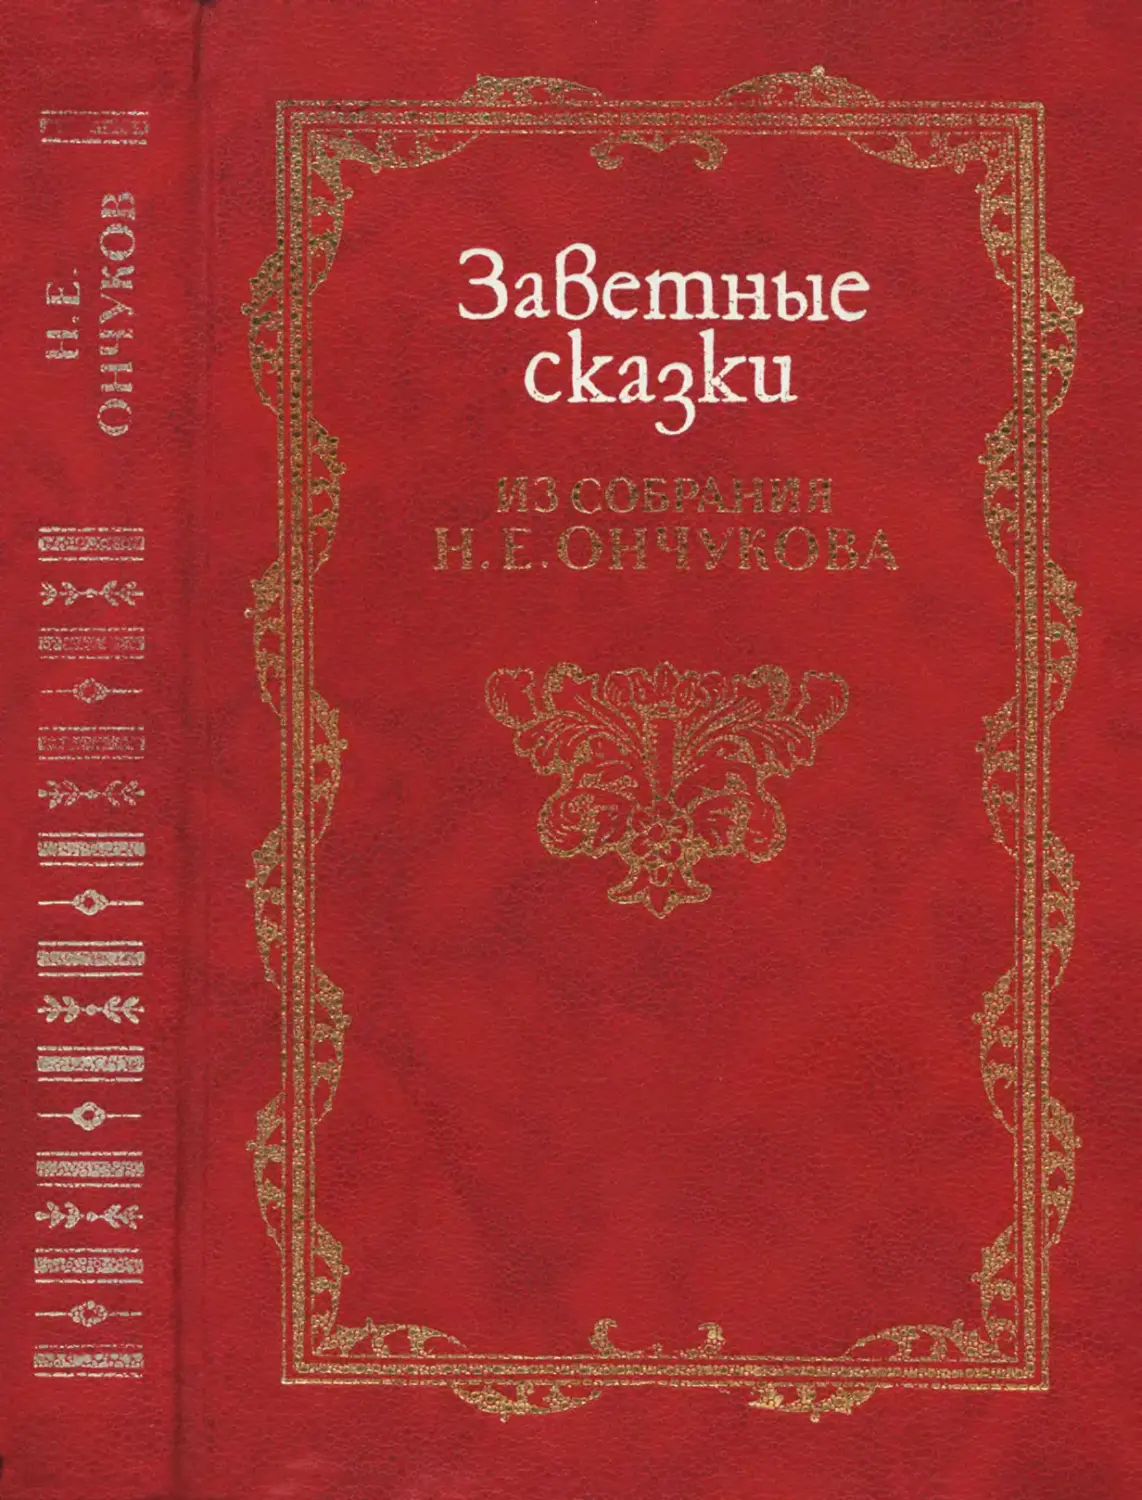 Заветные сказки из собрания Н. Е. Ончукова - 1996